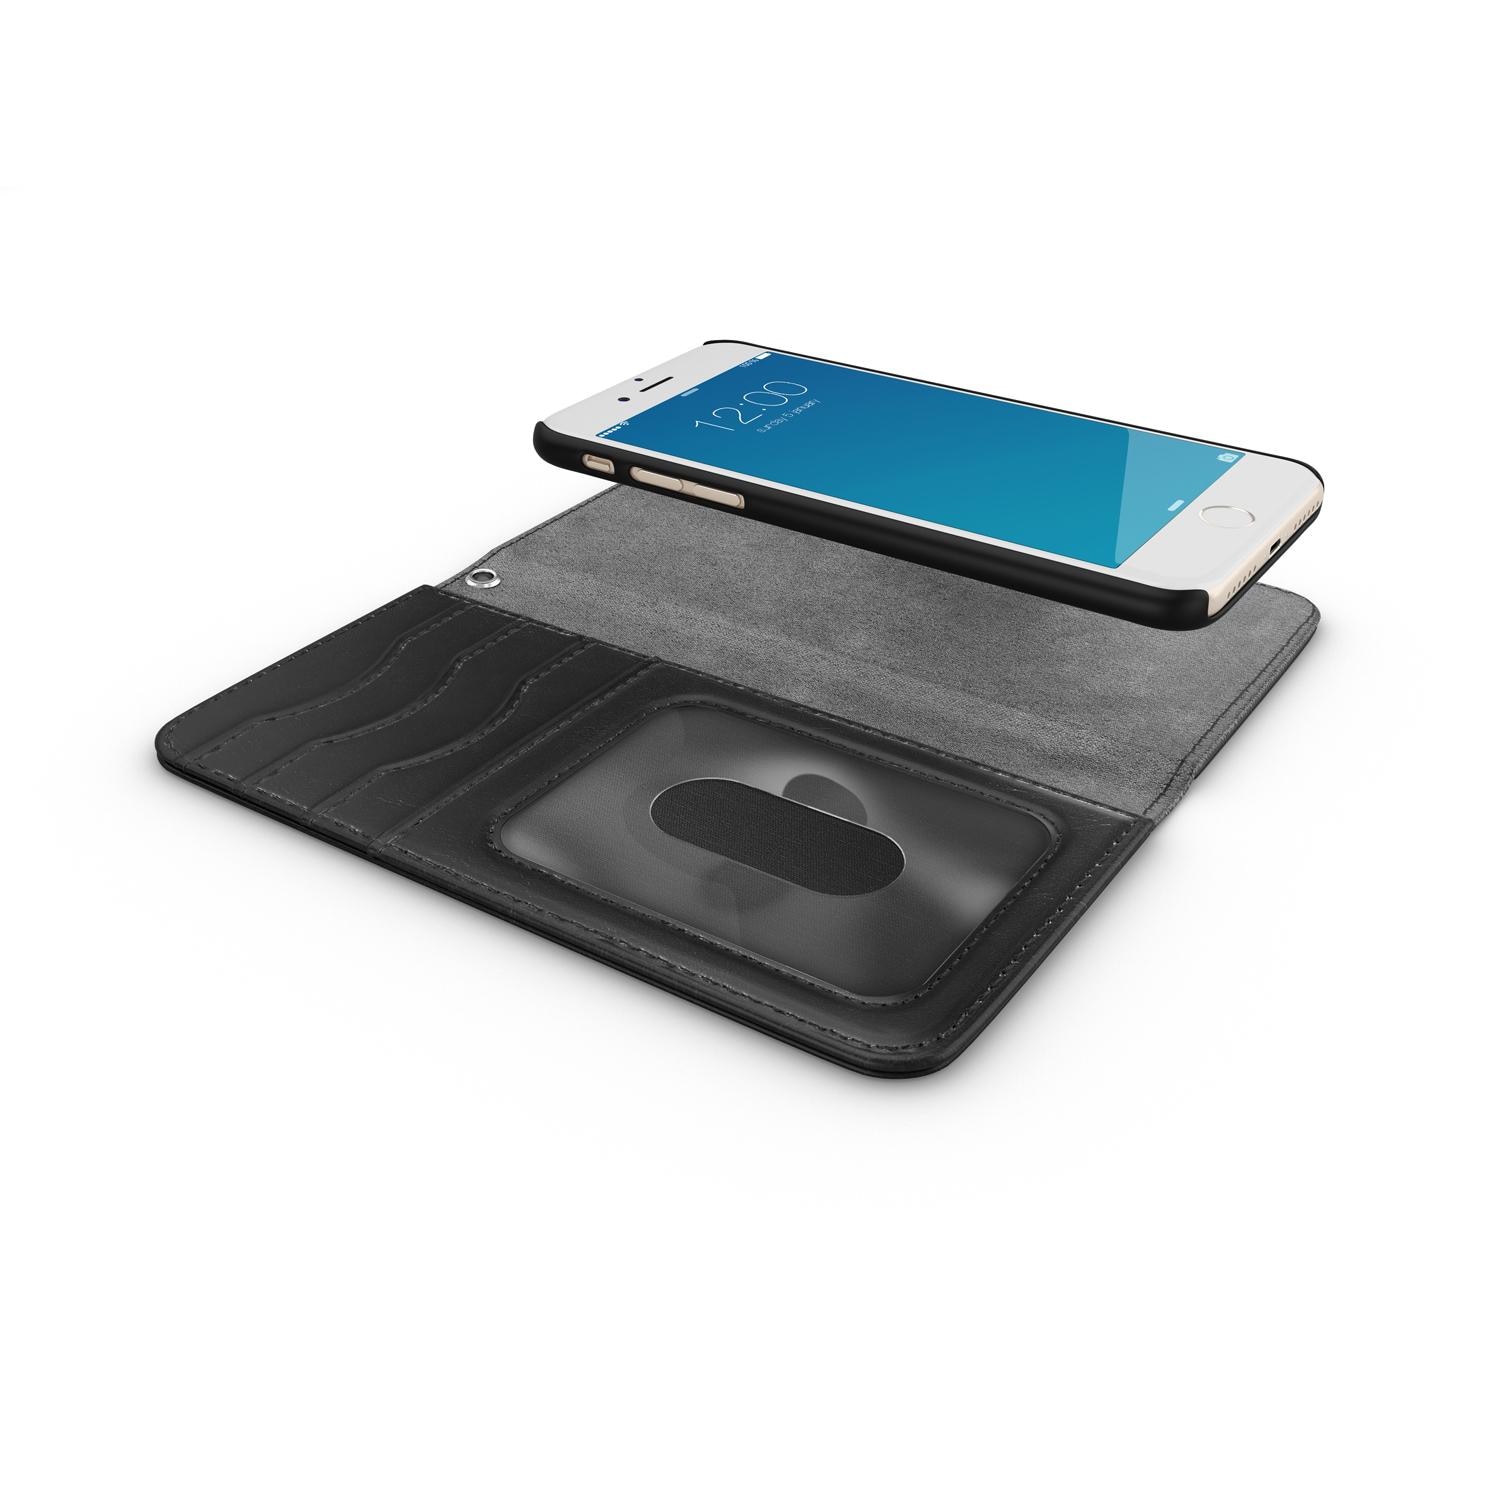 Cover portafoglio Magnet Wallet+ iPhone 6/6s Black